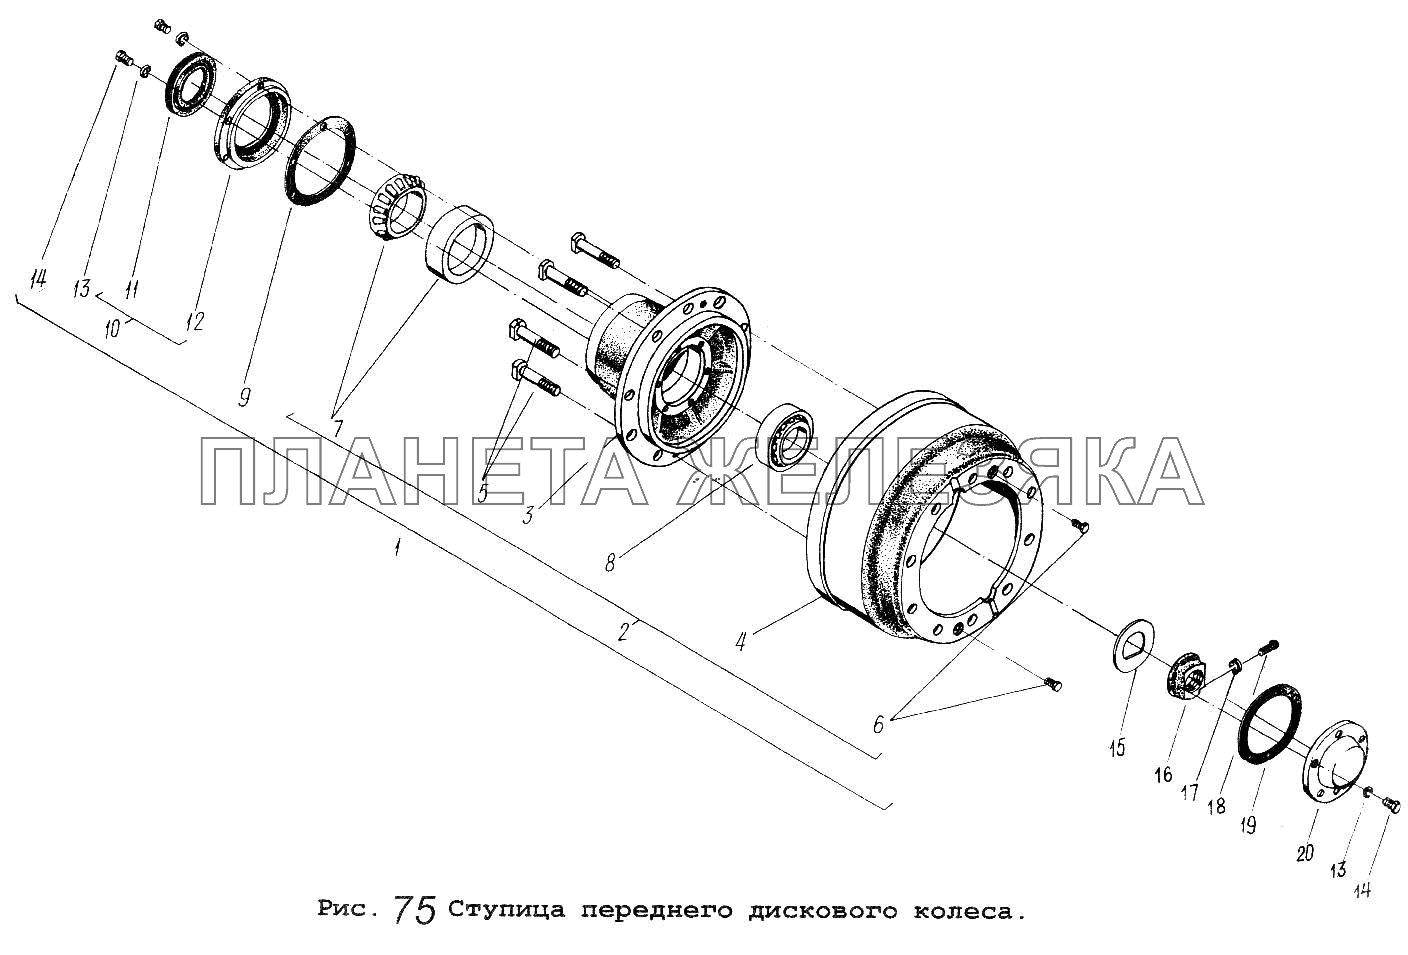 Ступица переднего дискового колеса МАЗ-5516